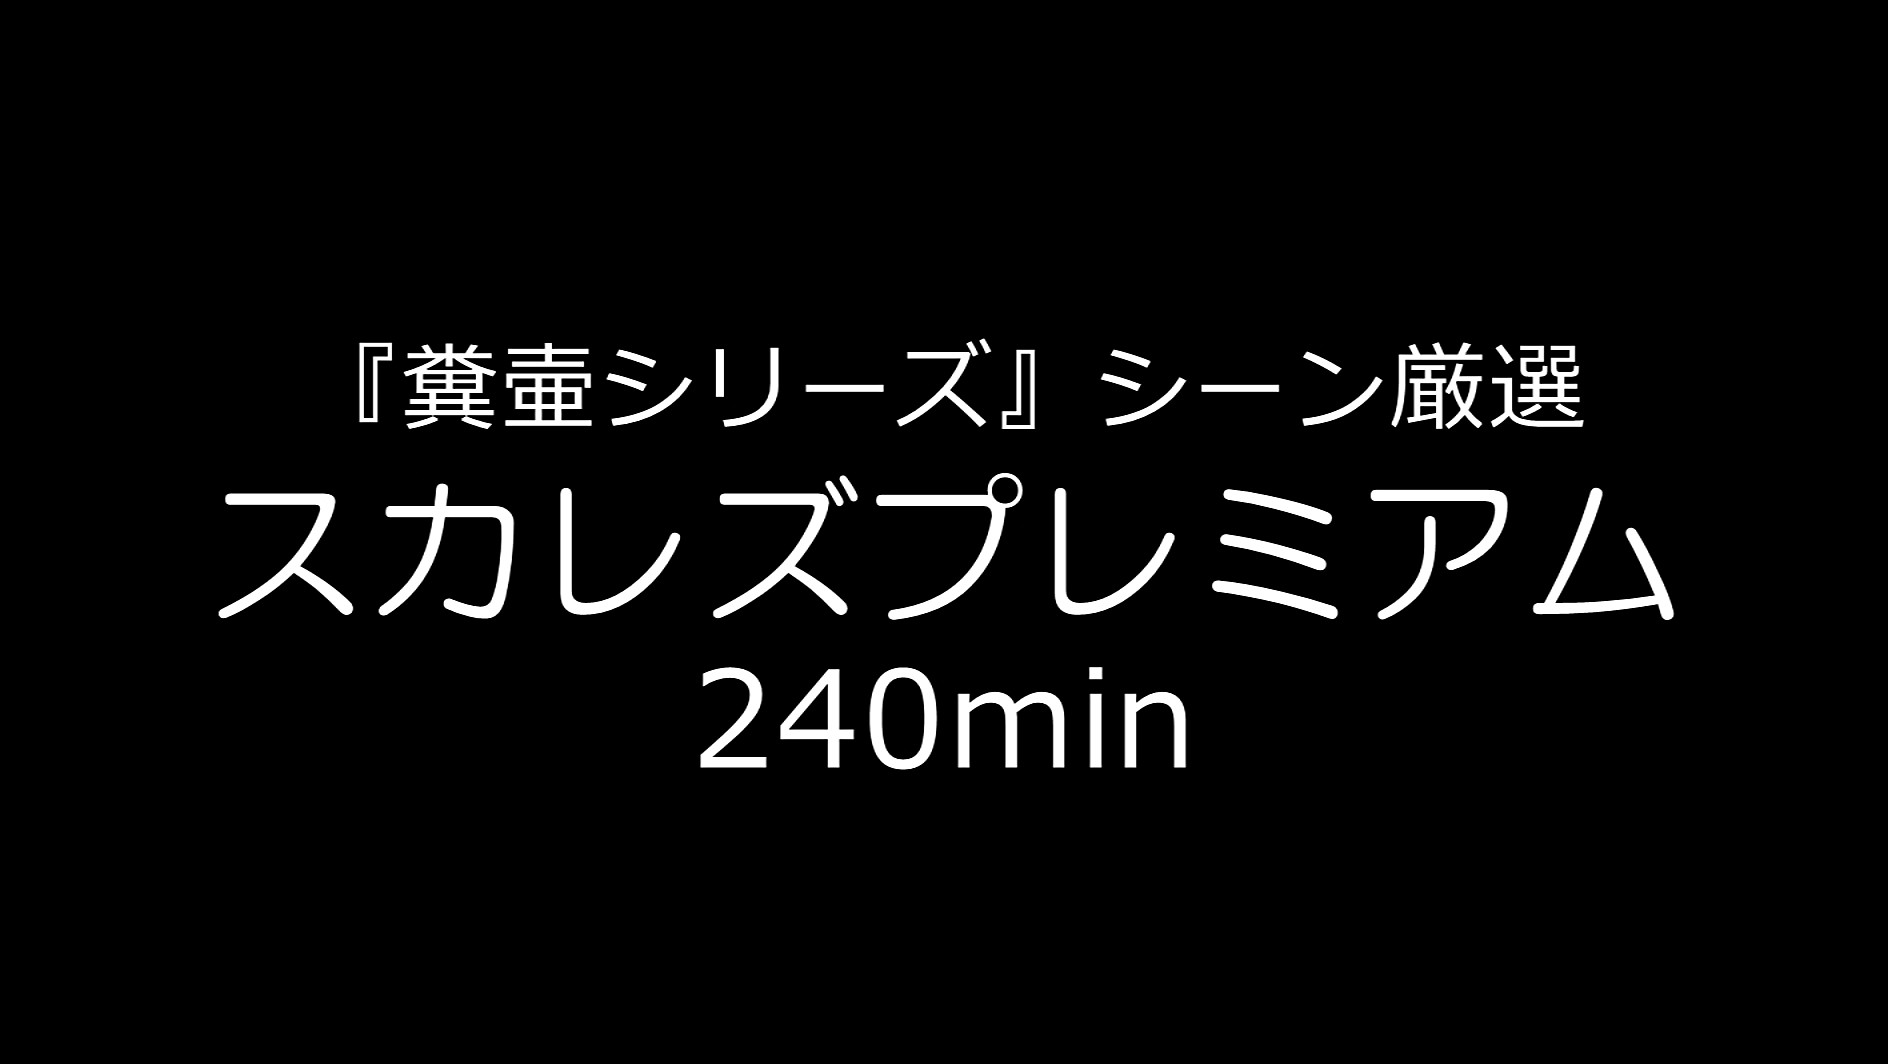 ★【スカトロ】『糞壷シリーズ』シーン厳選 スカレズプレミアム 240min.